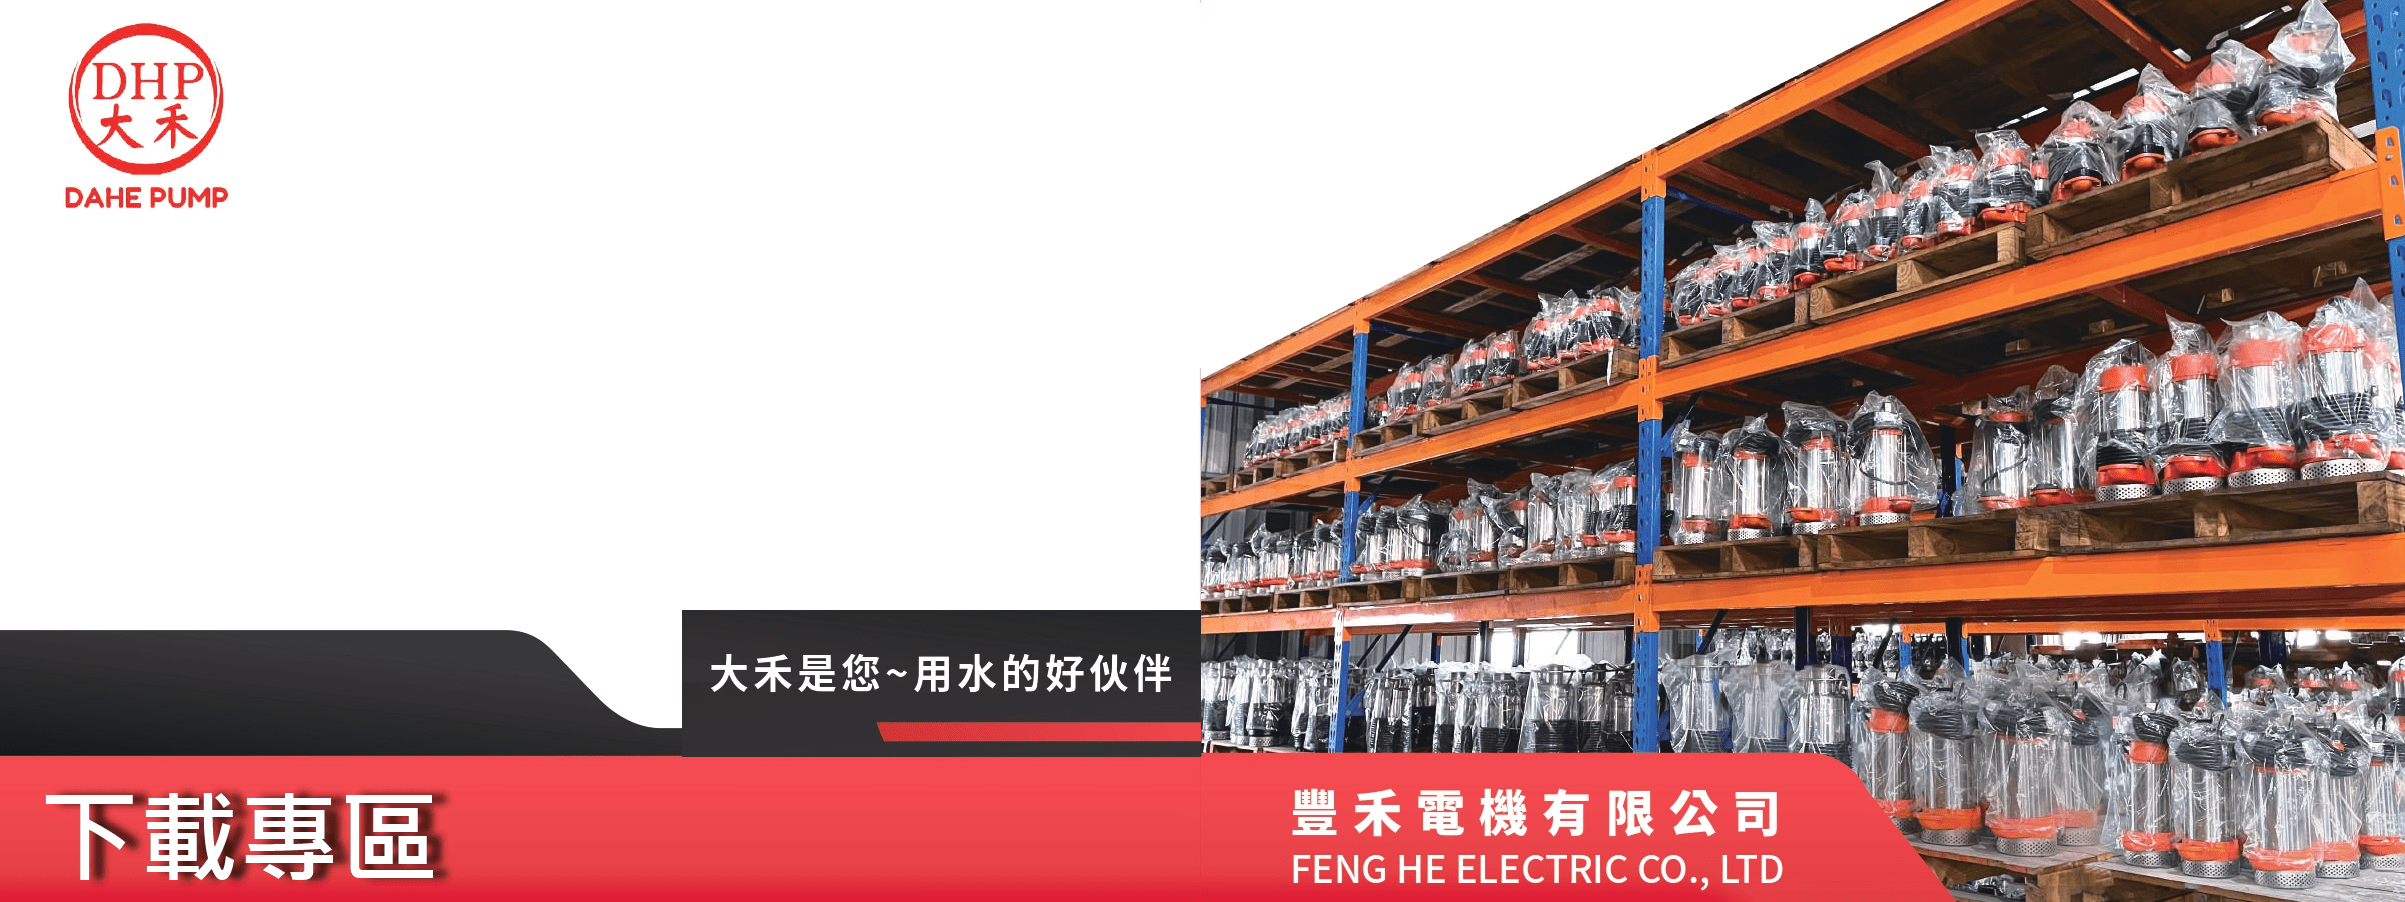 豐禾電機有限公司的下載專區 Banner圖片